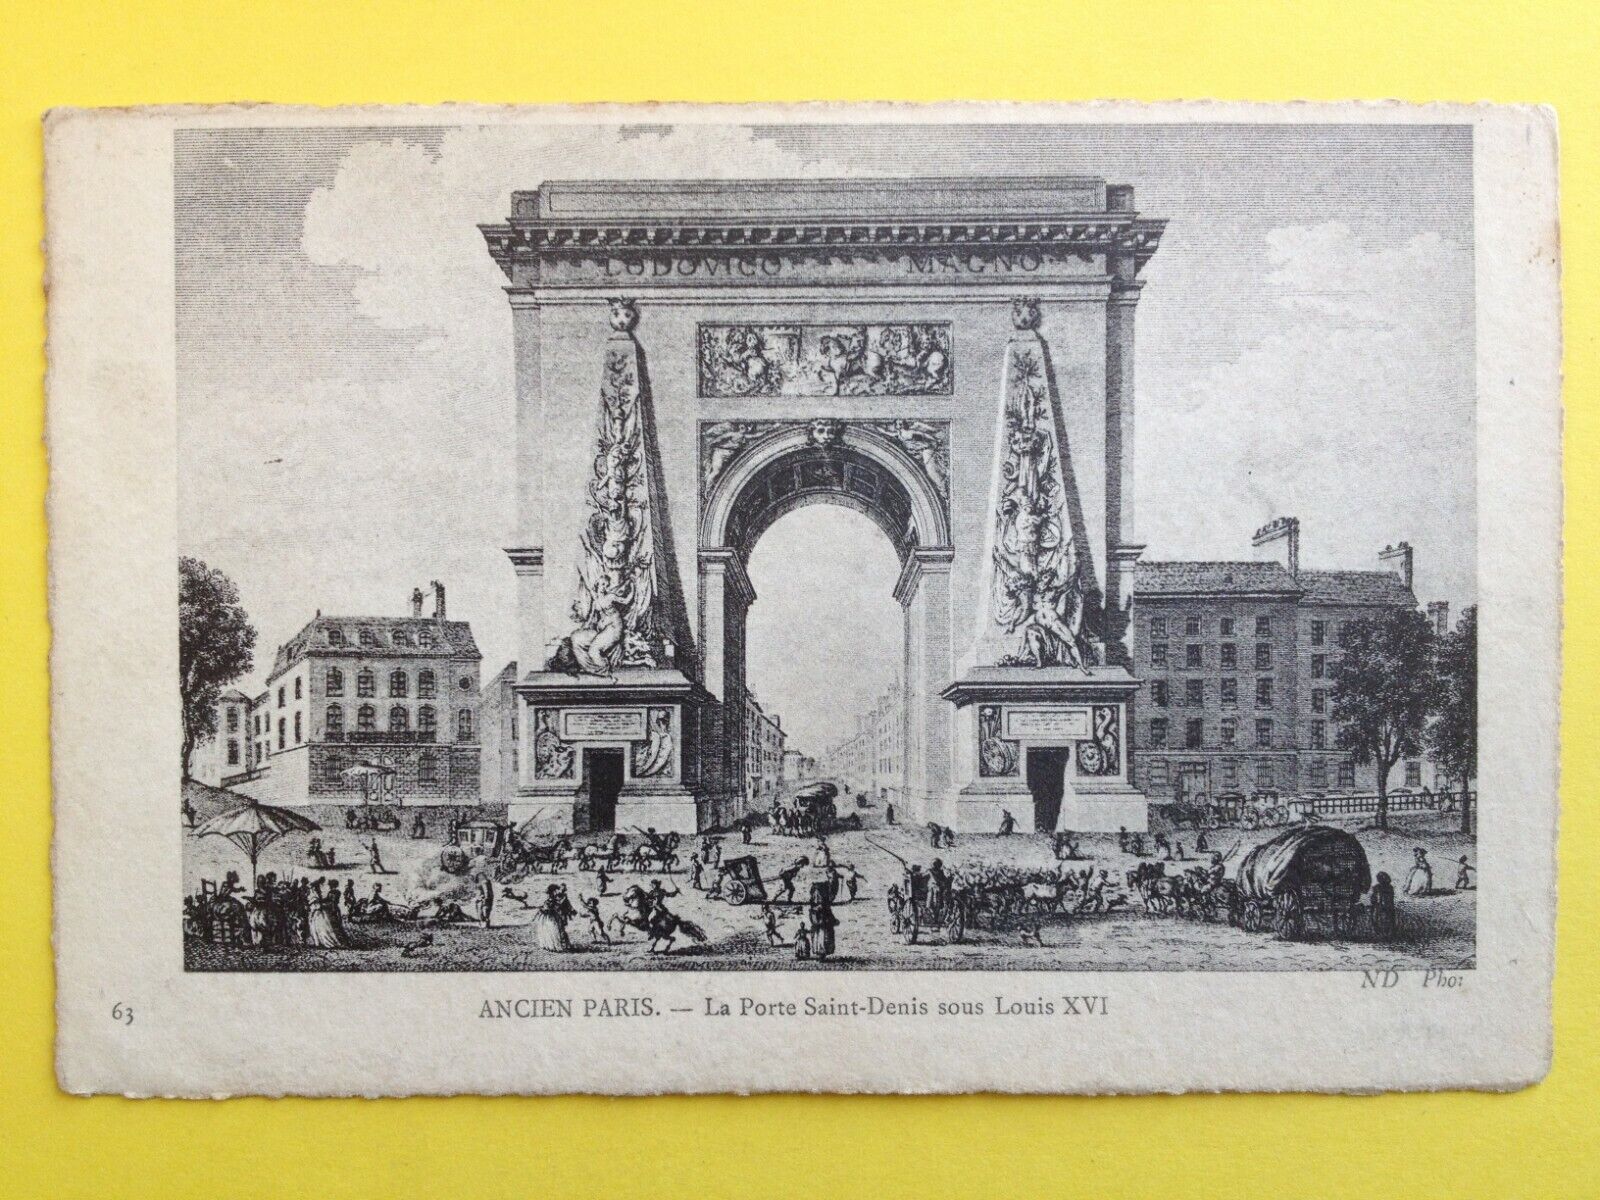 cpa engraving paper vergé OLD PARIS La PORTE SAINT DENIS circa 1780